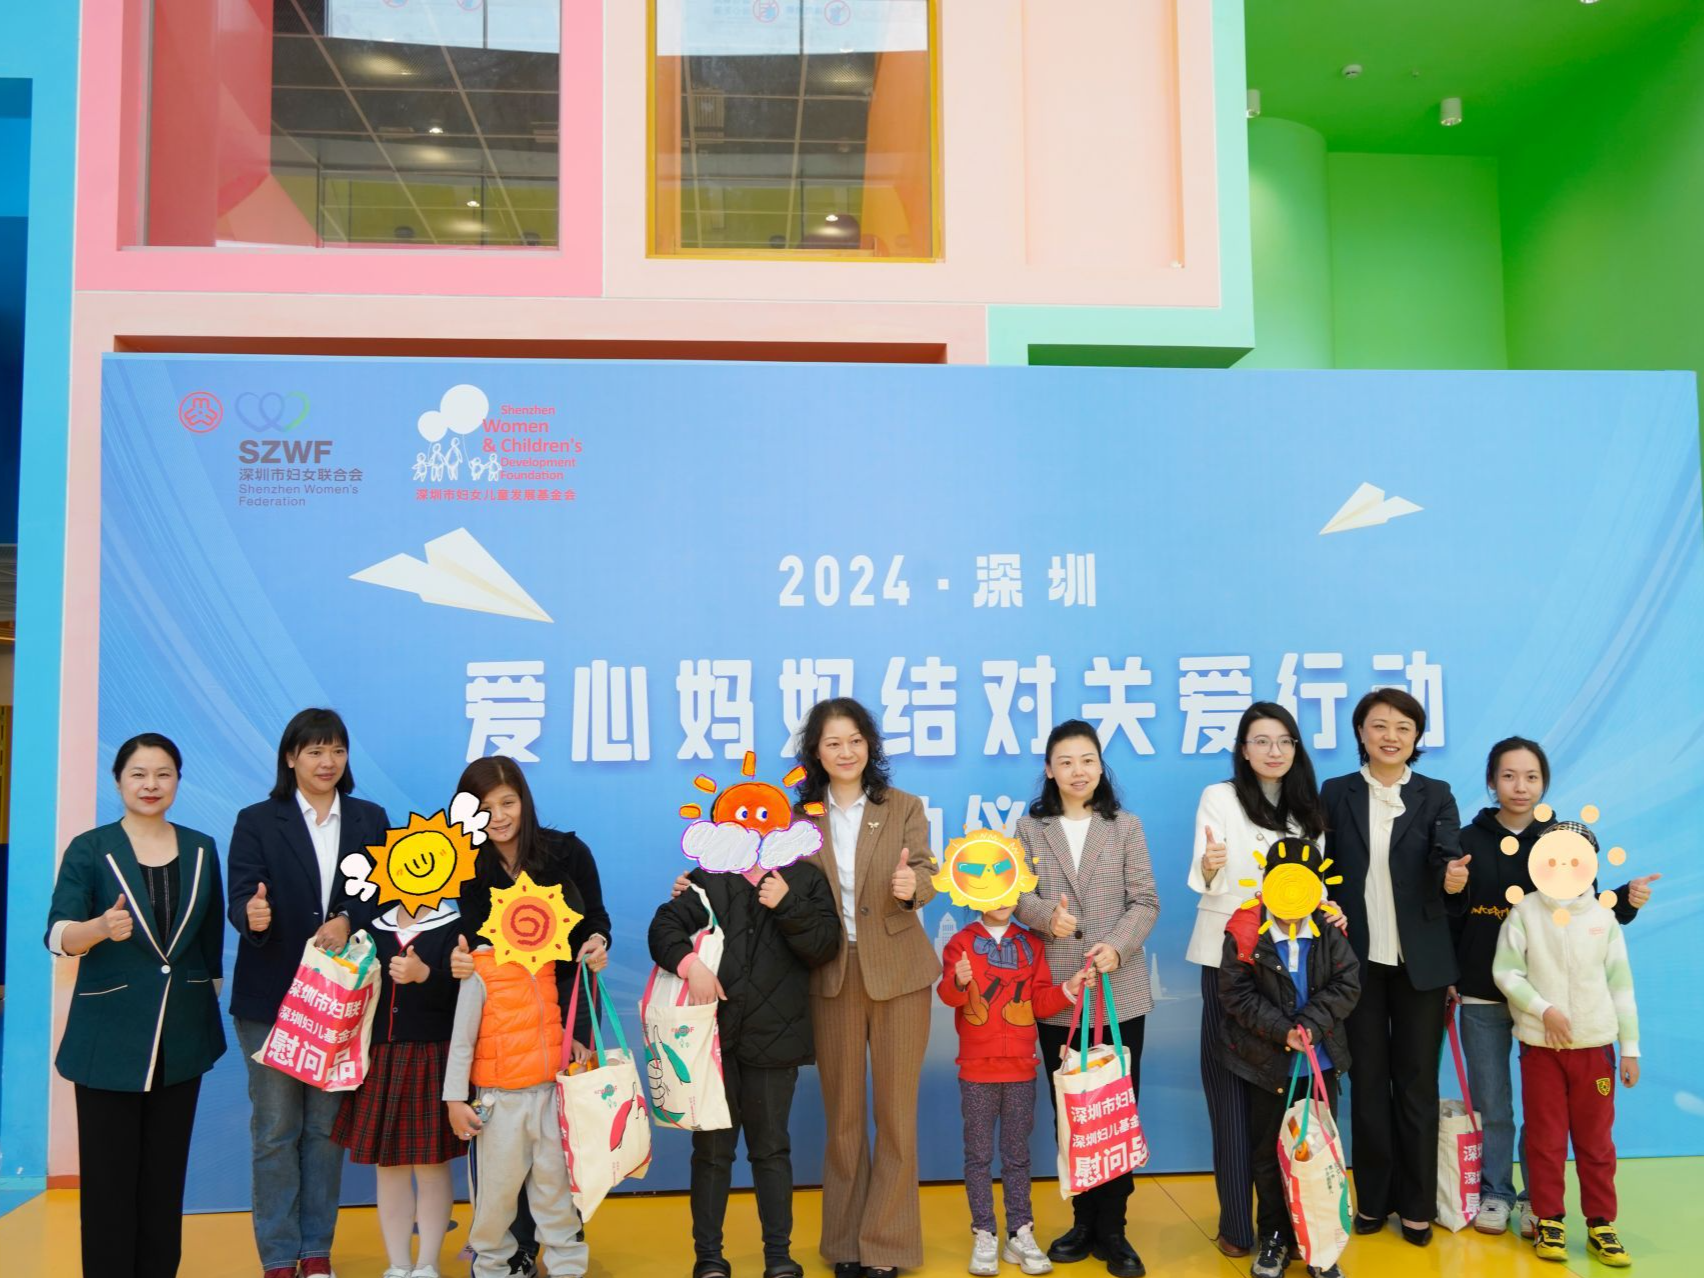 举办鹏城巾帼创新创业大赛 2024年服务深圳妇女儿童十件实事发布